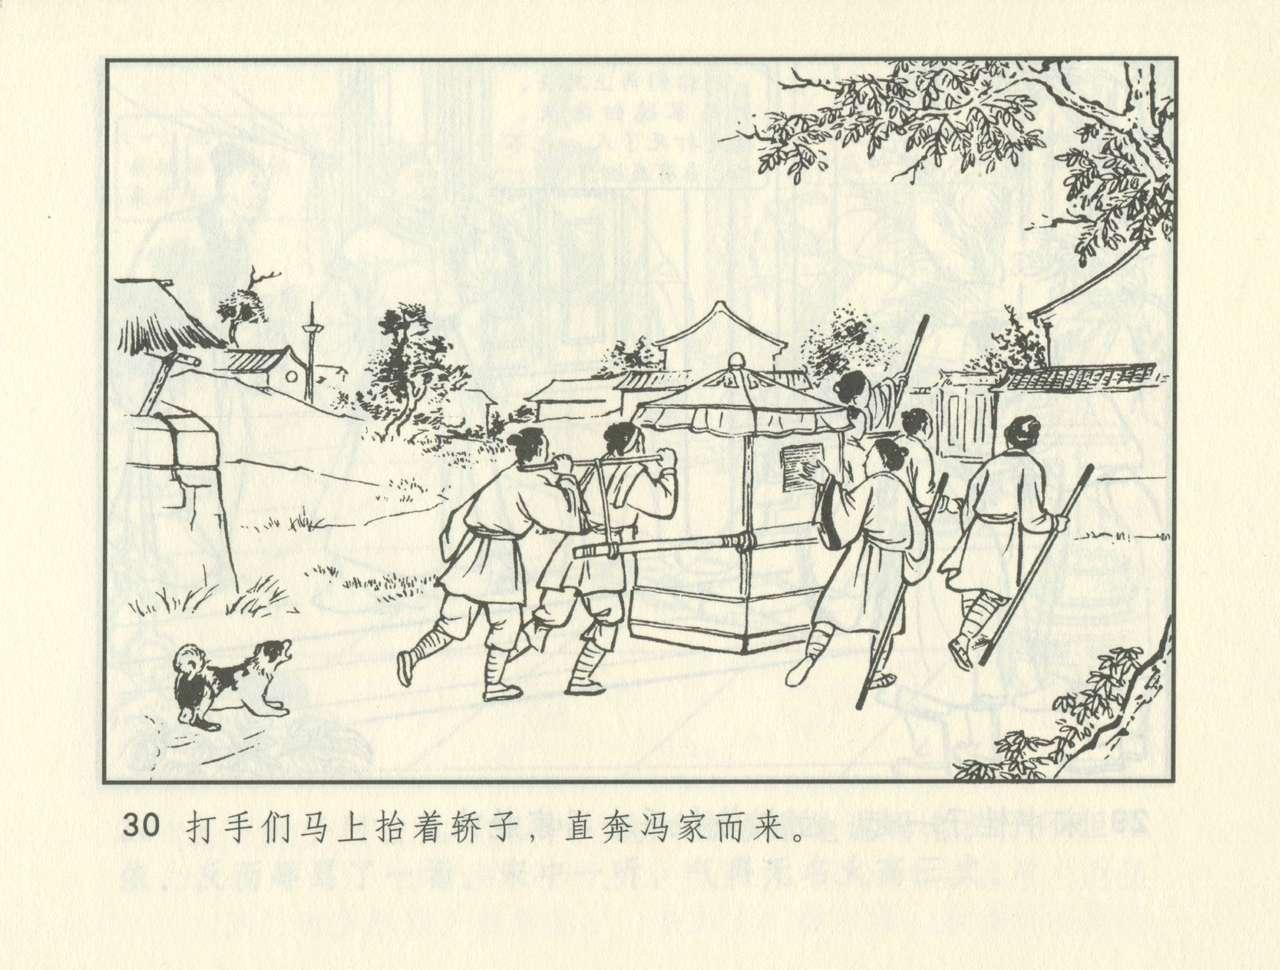 聊斋志异 张玮等绘 天津人民美术出版社 卷二十一 ~ 三十 370